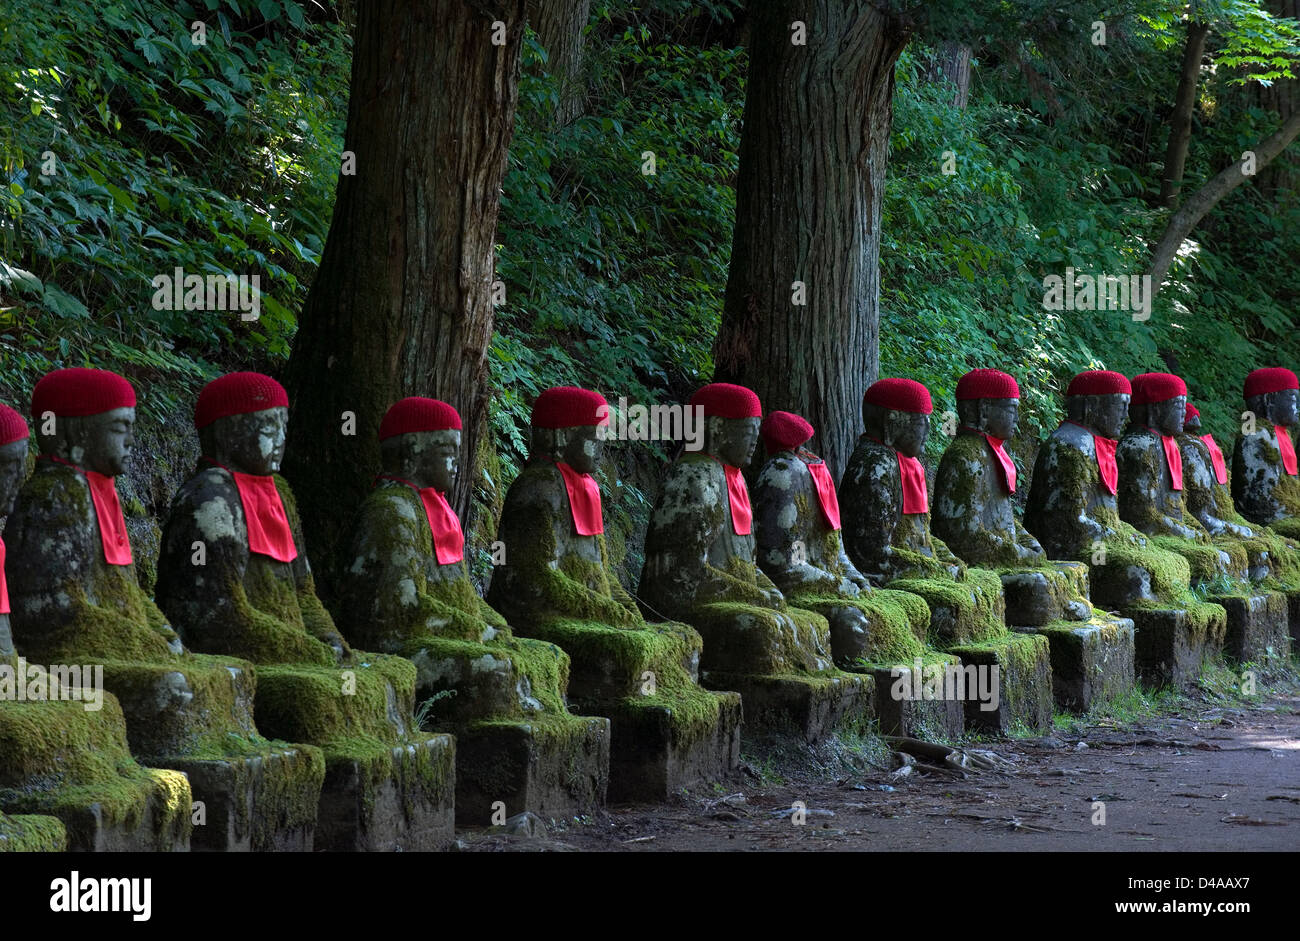 Riga di pietra "jizo' udienza statue di Buddha con red pettorine e cappelli nell'abisso Ganmangafuchi foresta di Nikko, Tochigi, Giappone. Foto Stock